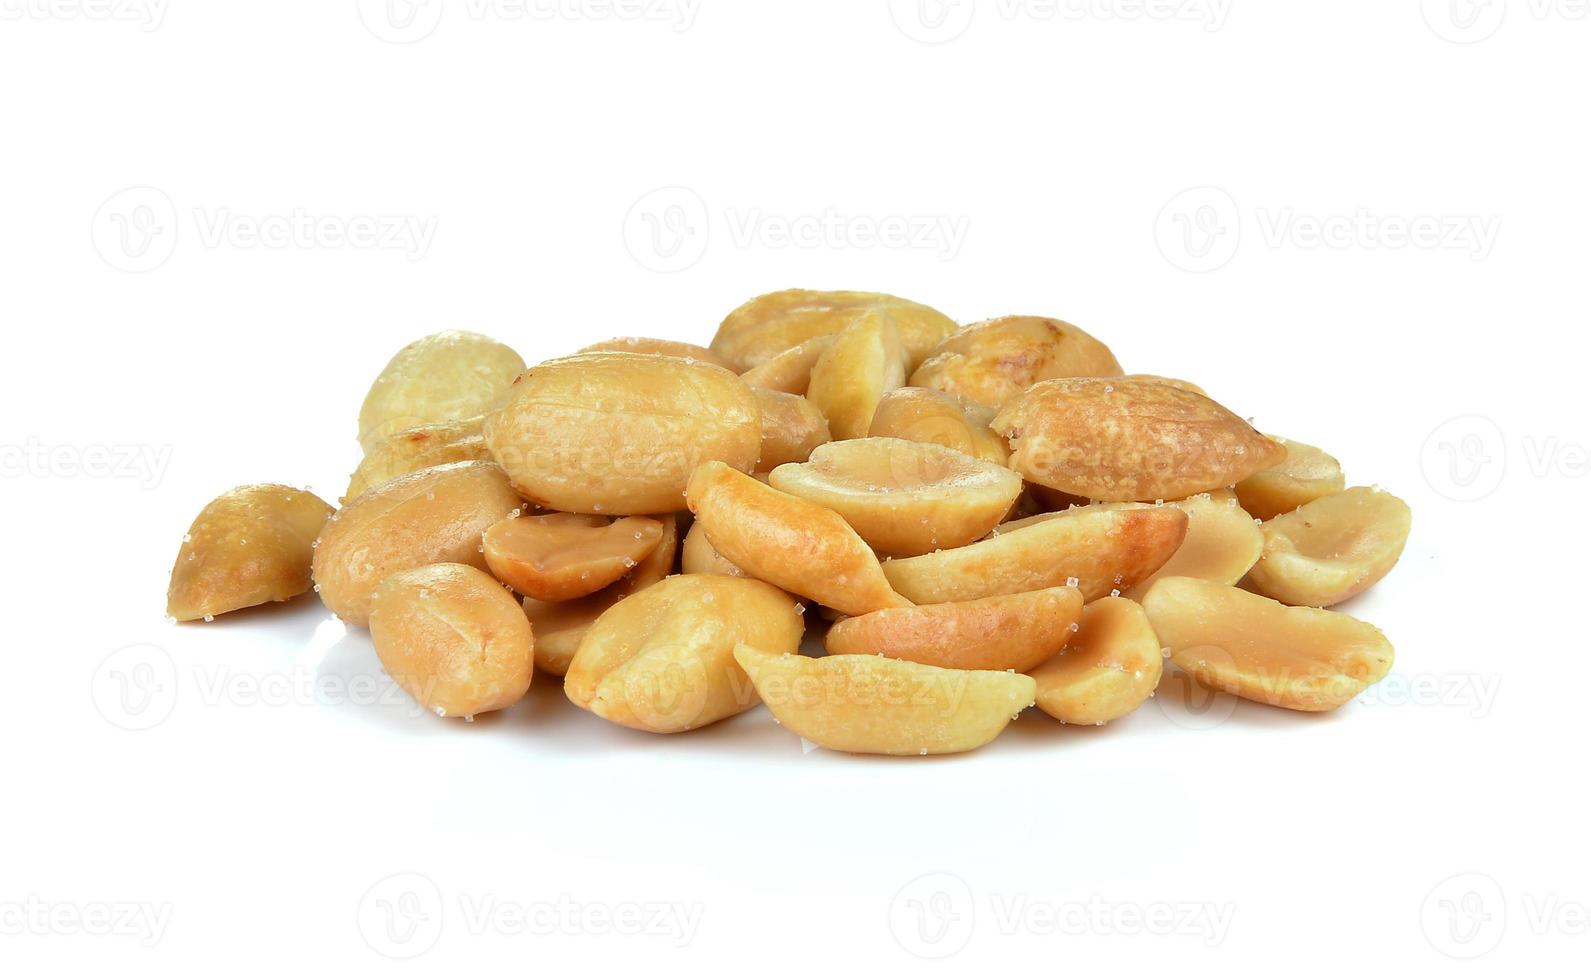 amendoim em fundo branco foto